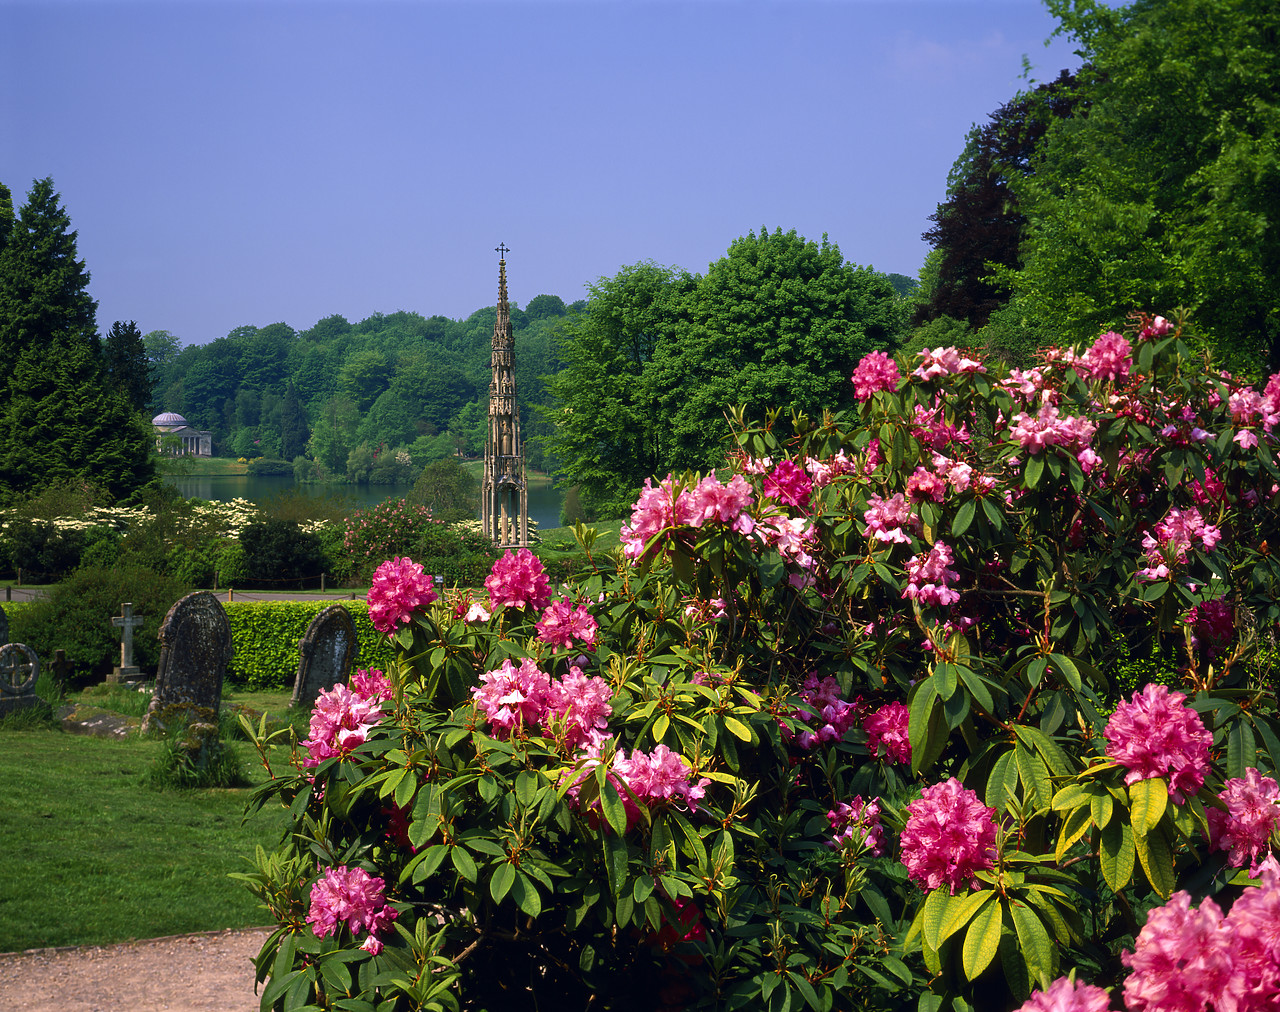 #980016-2 - Stourhead Gardens, Stourton, Wiltshire, England